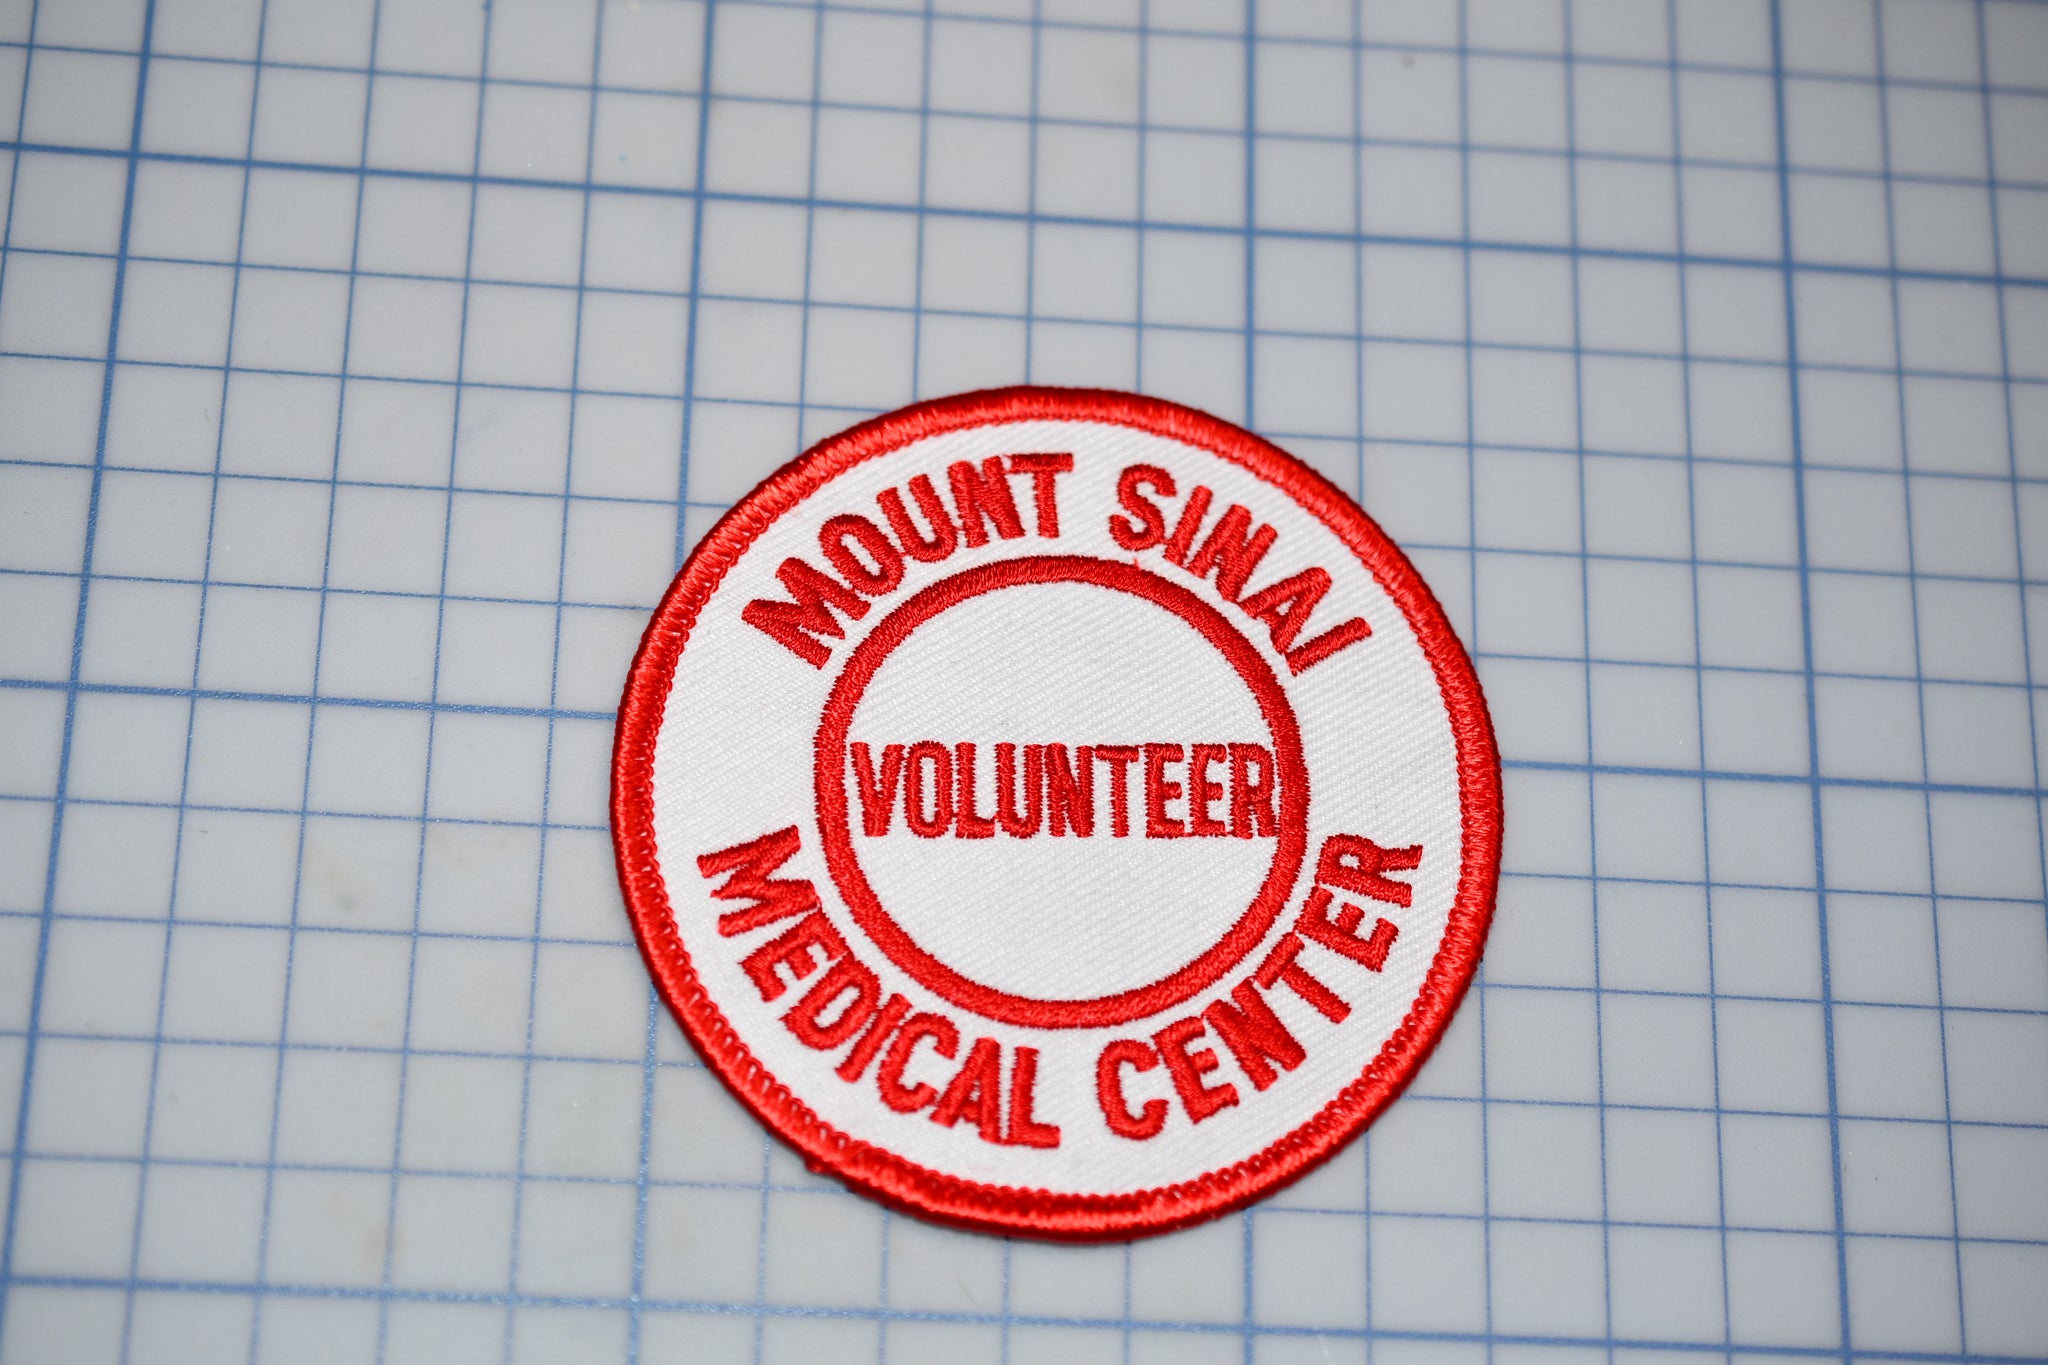 Mount Sinai New York Medical Center Volunteer Patch (B29-346)